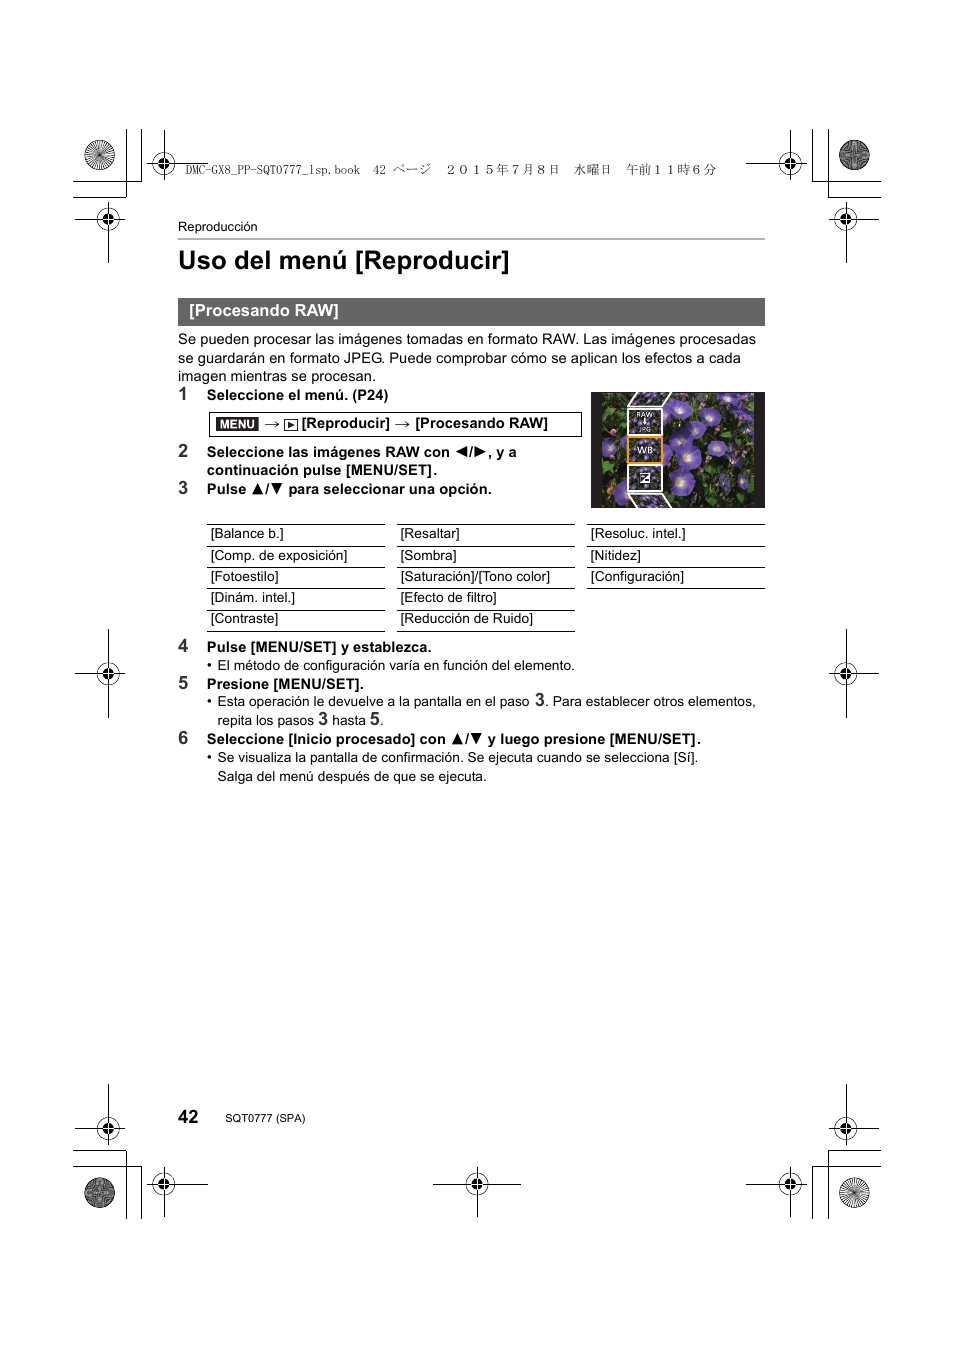 Uso del menú [reproducir | Panasonic Lumix GX8 Manual del usuario | Página 42 / 76